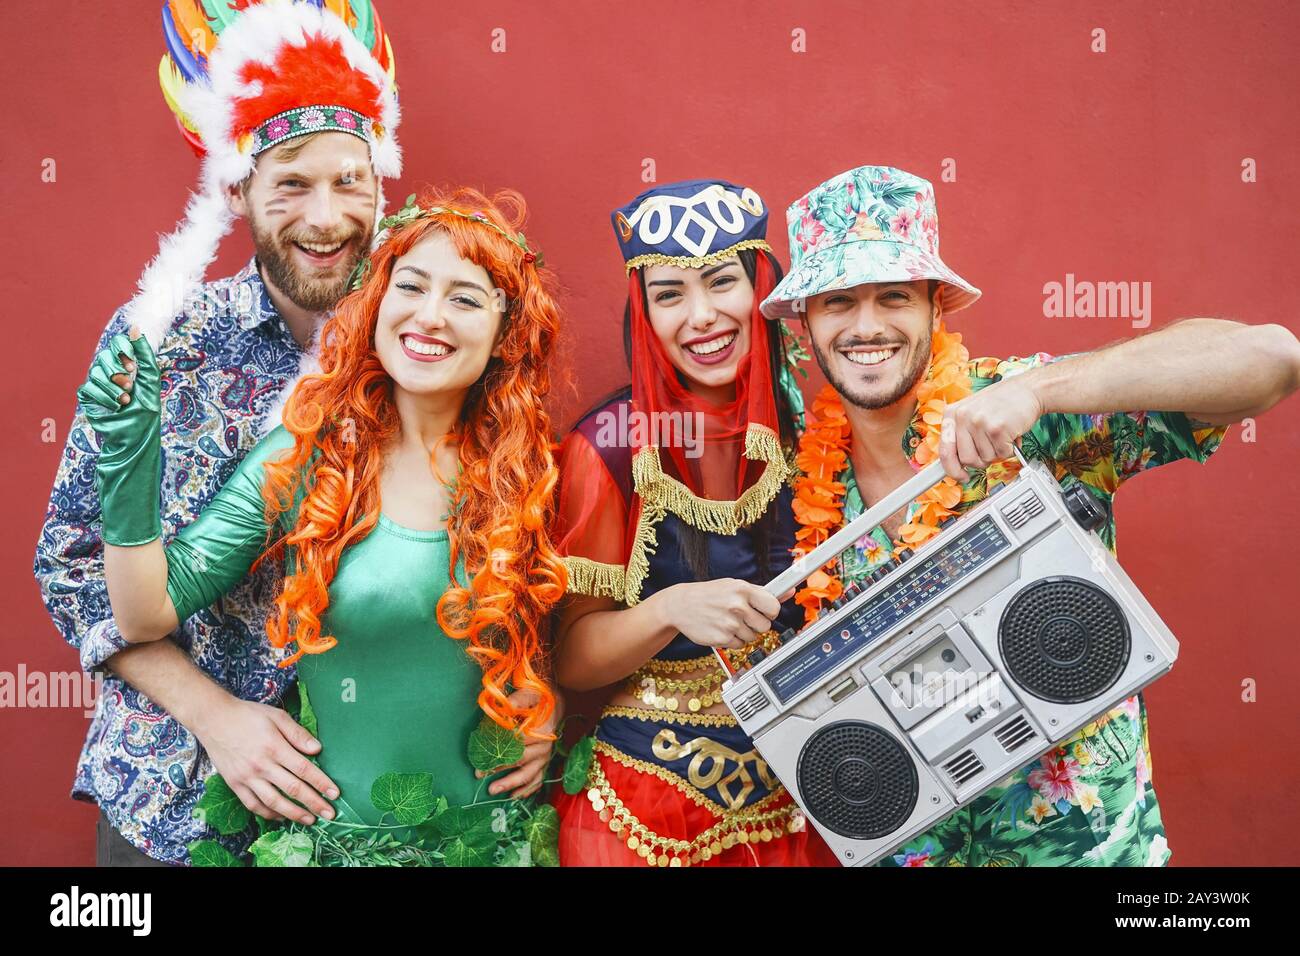 Heureux amis célébrant la fête du carnaval en plein air - jeunes fous ayant des costumes de fantaisie écoutant de la musique avec la chaîne stéréo vintage boombox Banque D'Images